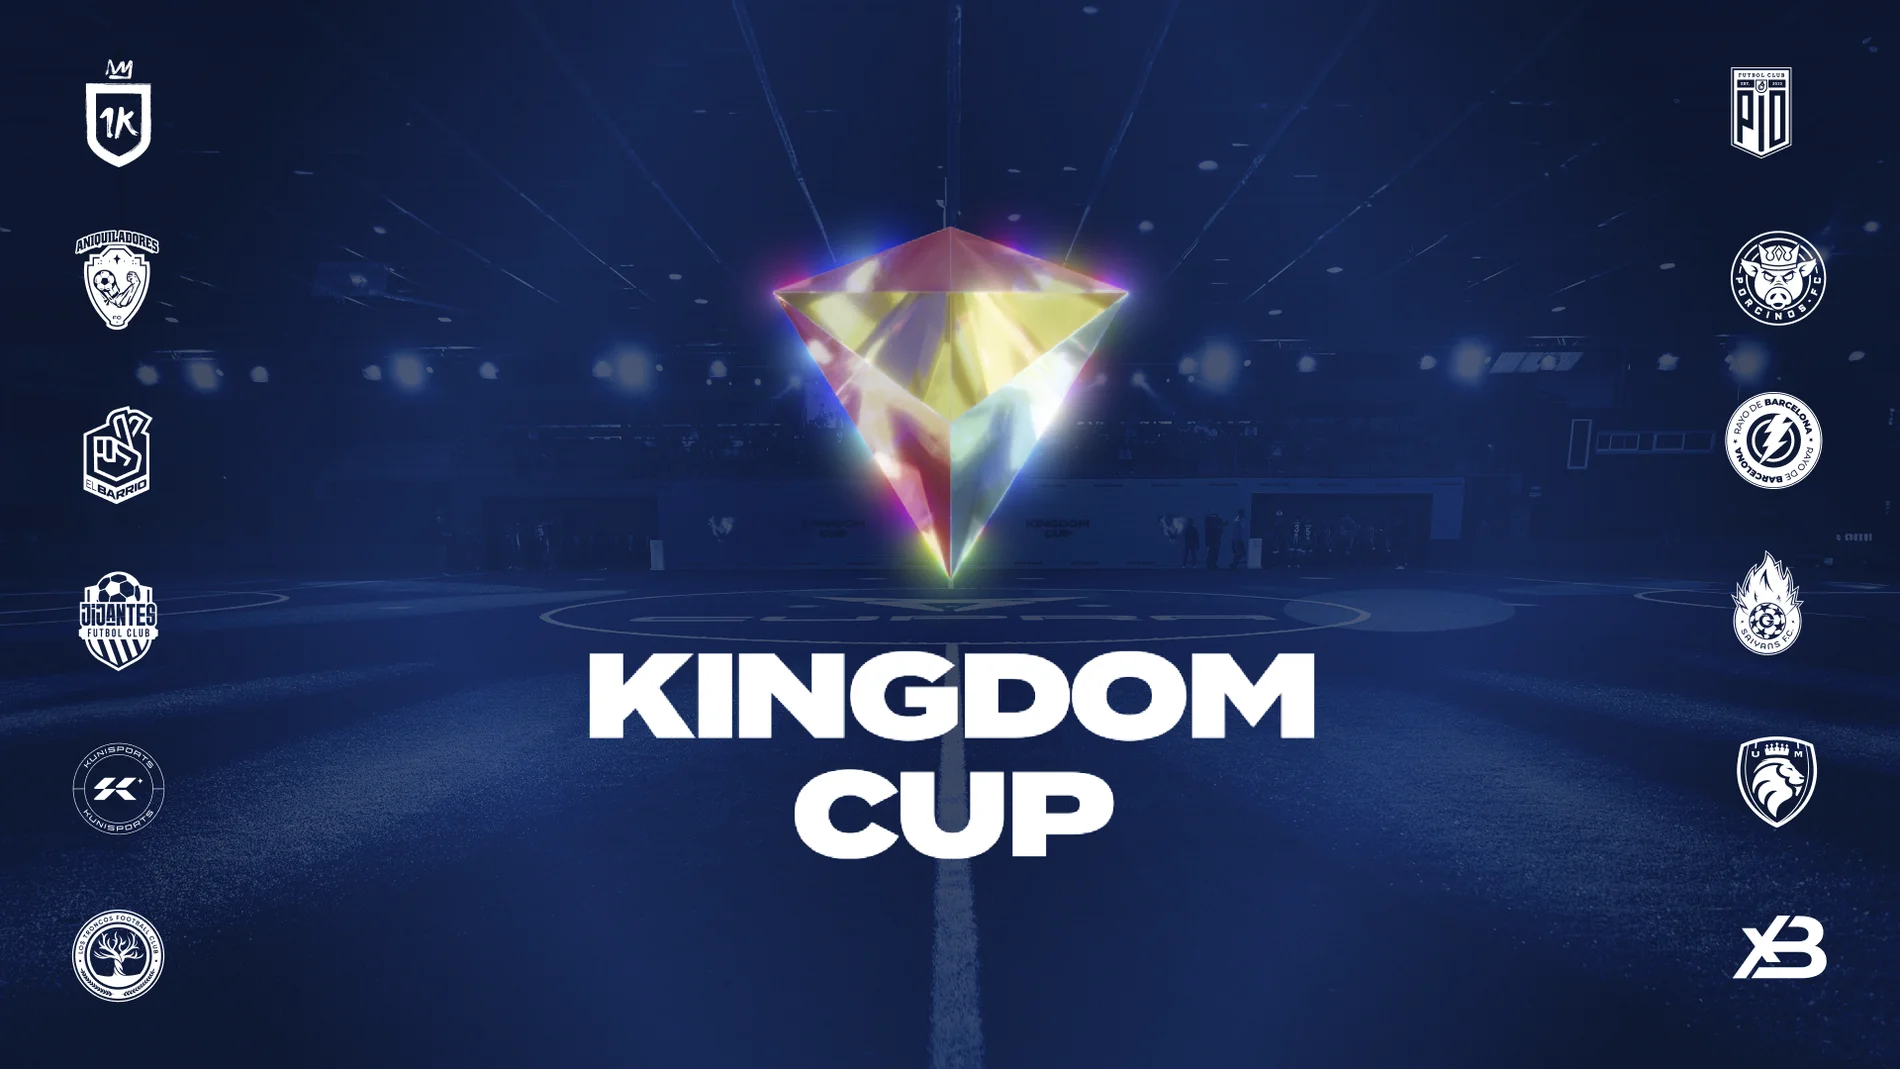 La Kings League de Piqué se reinventa con la Kingdom Cup